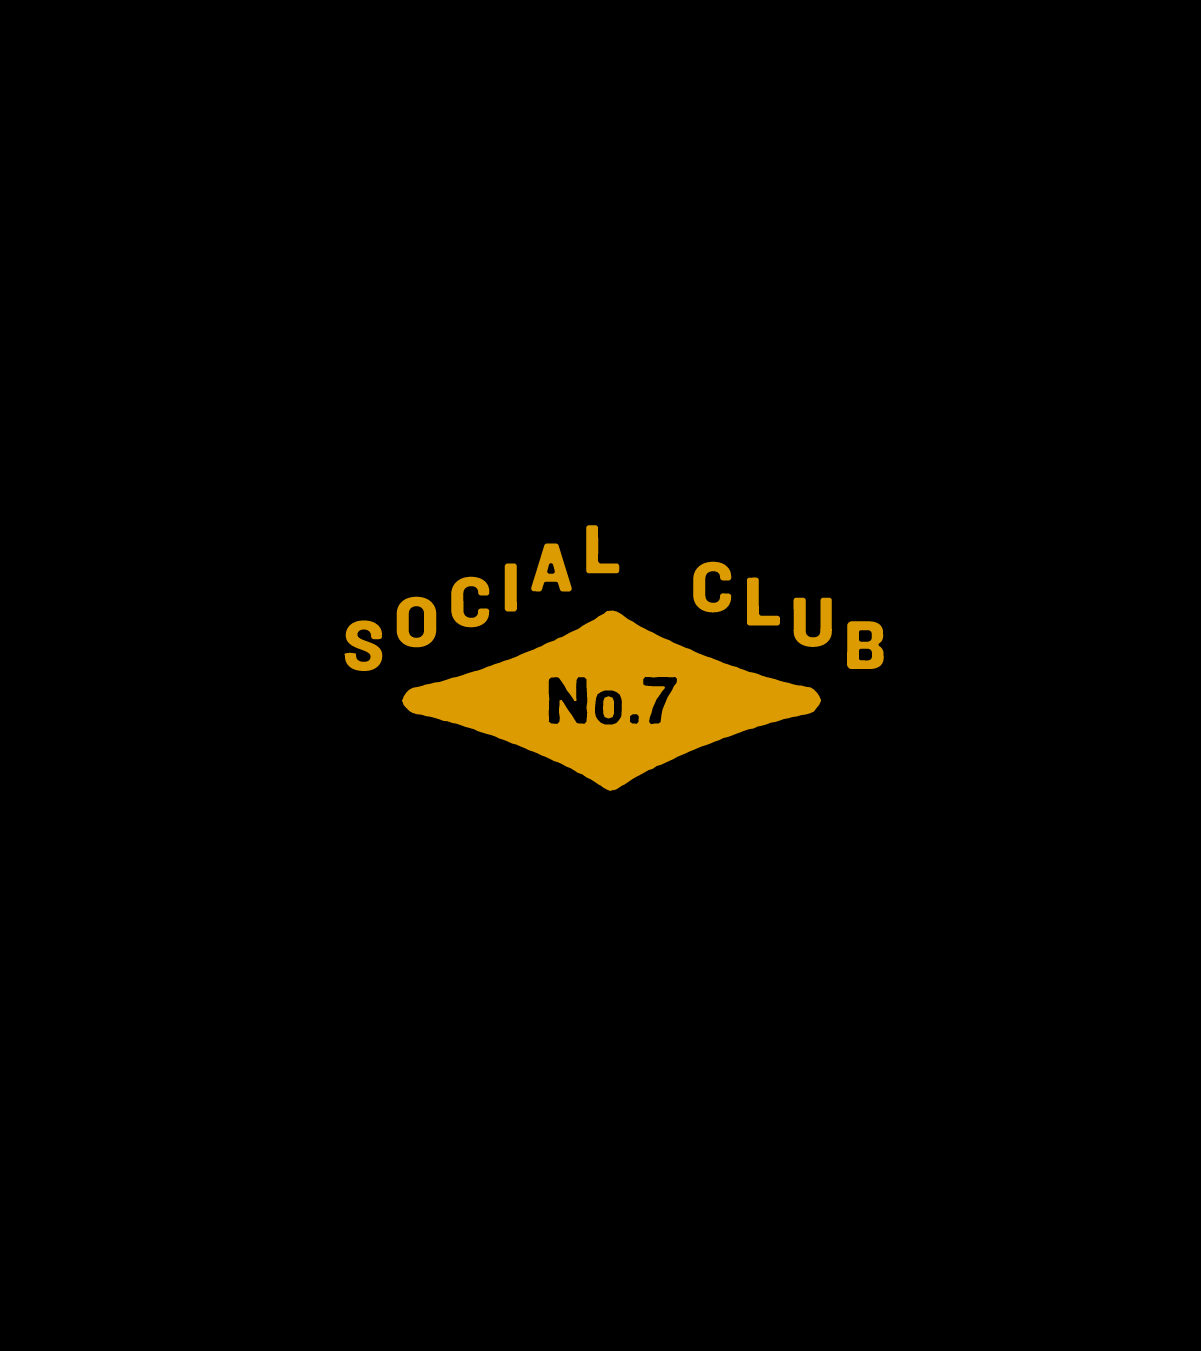 Social_Club_no7_elements-11.png